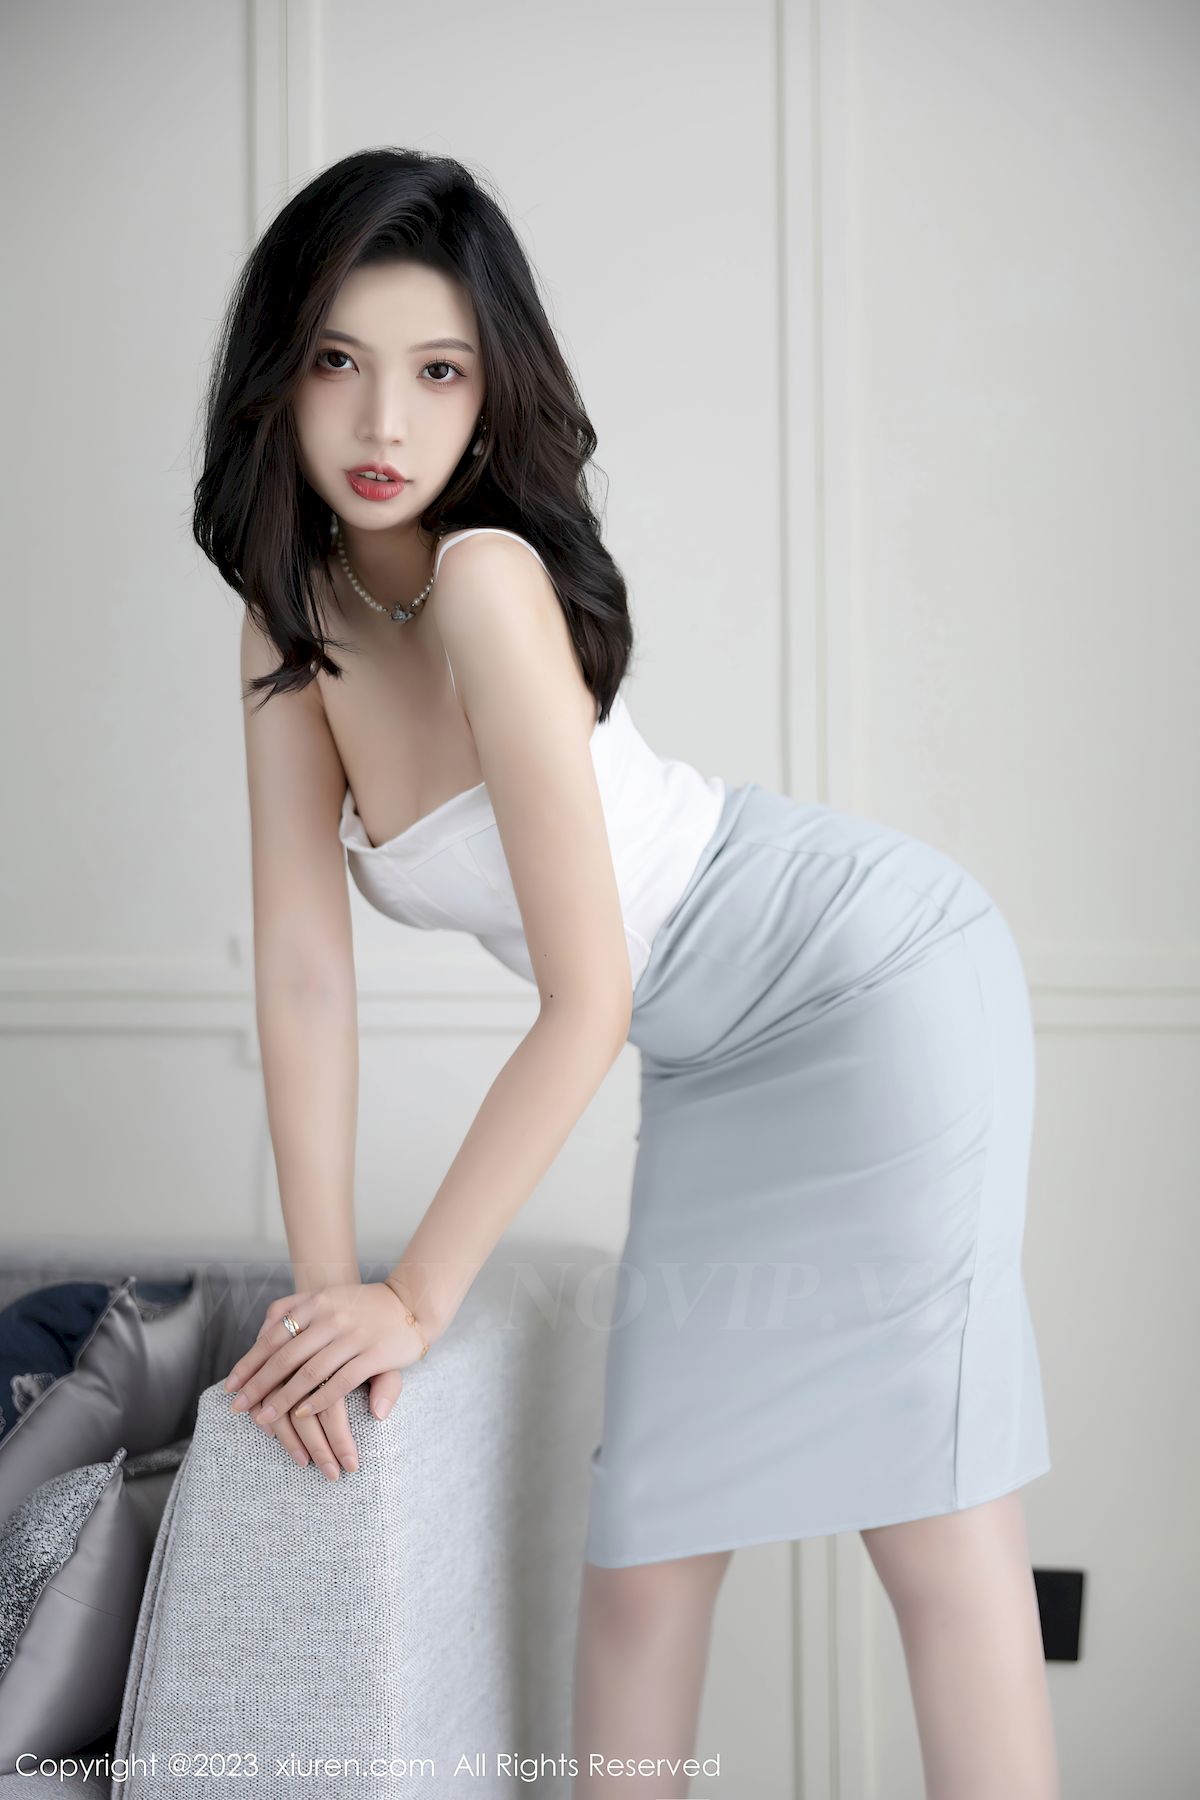 郑颖姗Bev白色上衣搭配淡灰色短裙性感写真